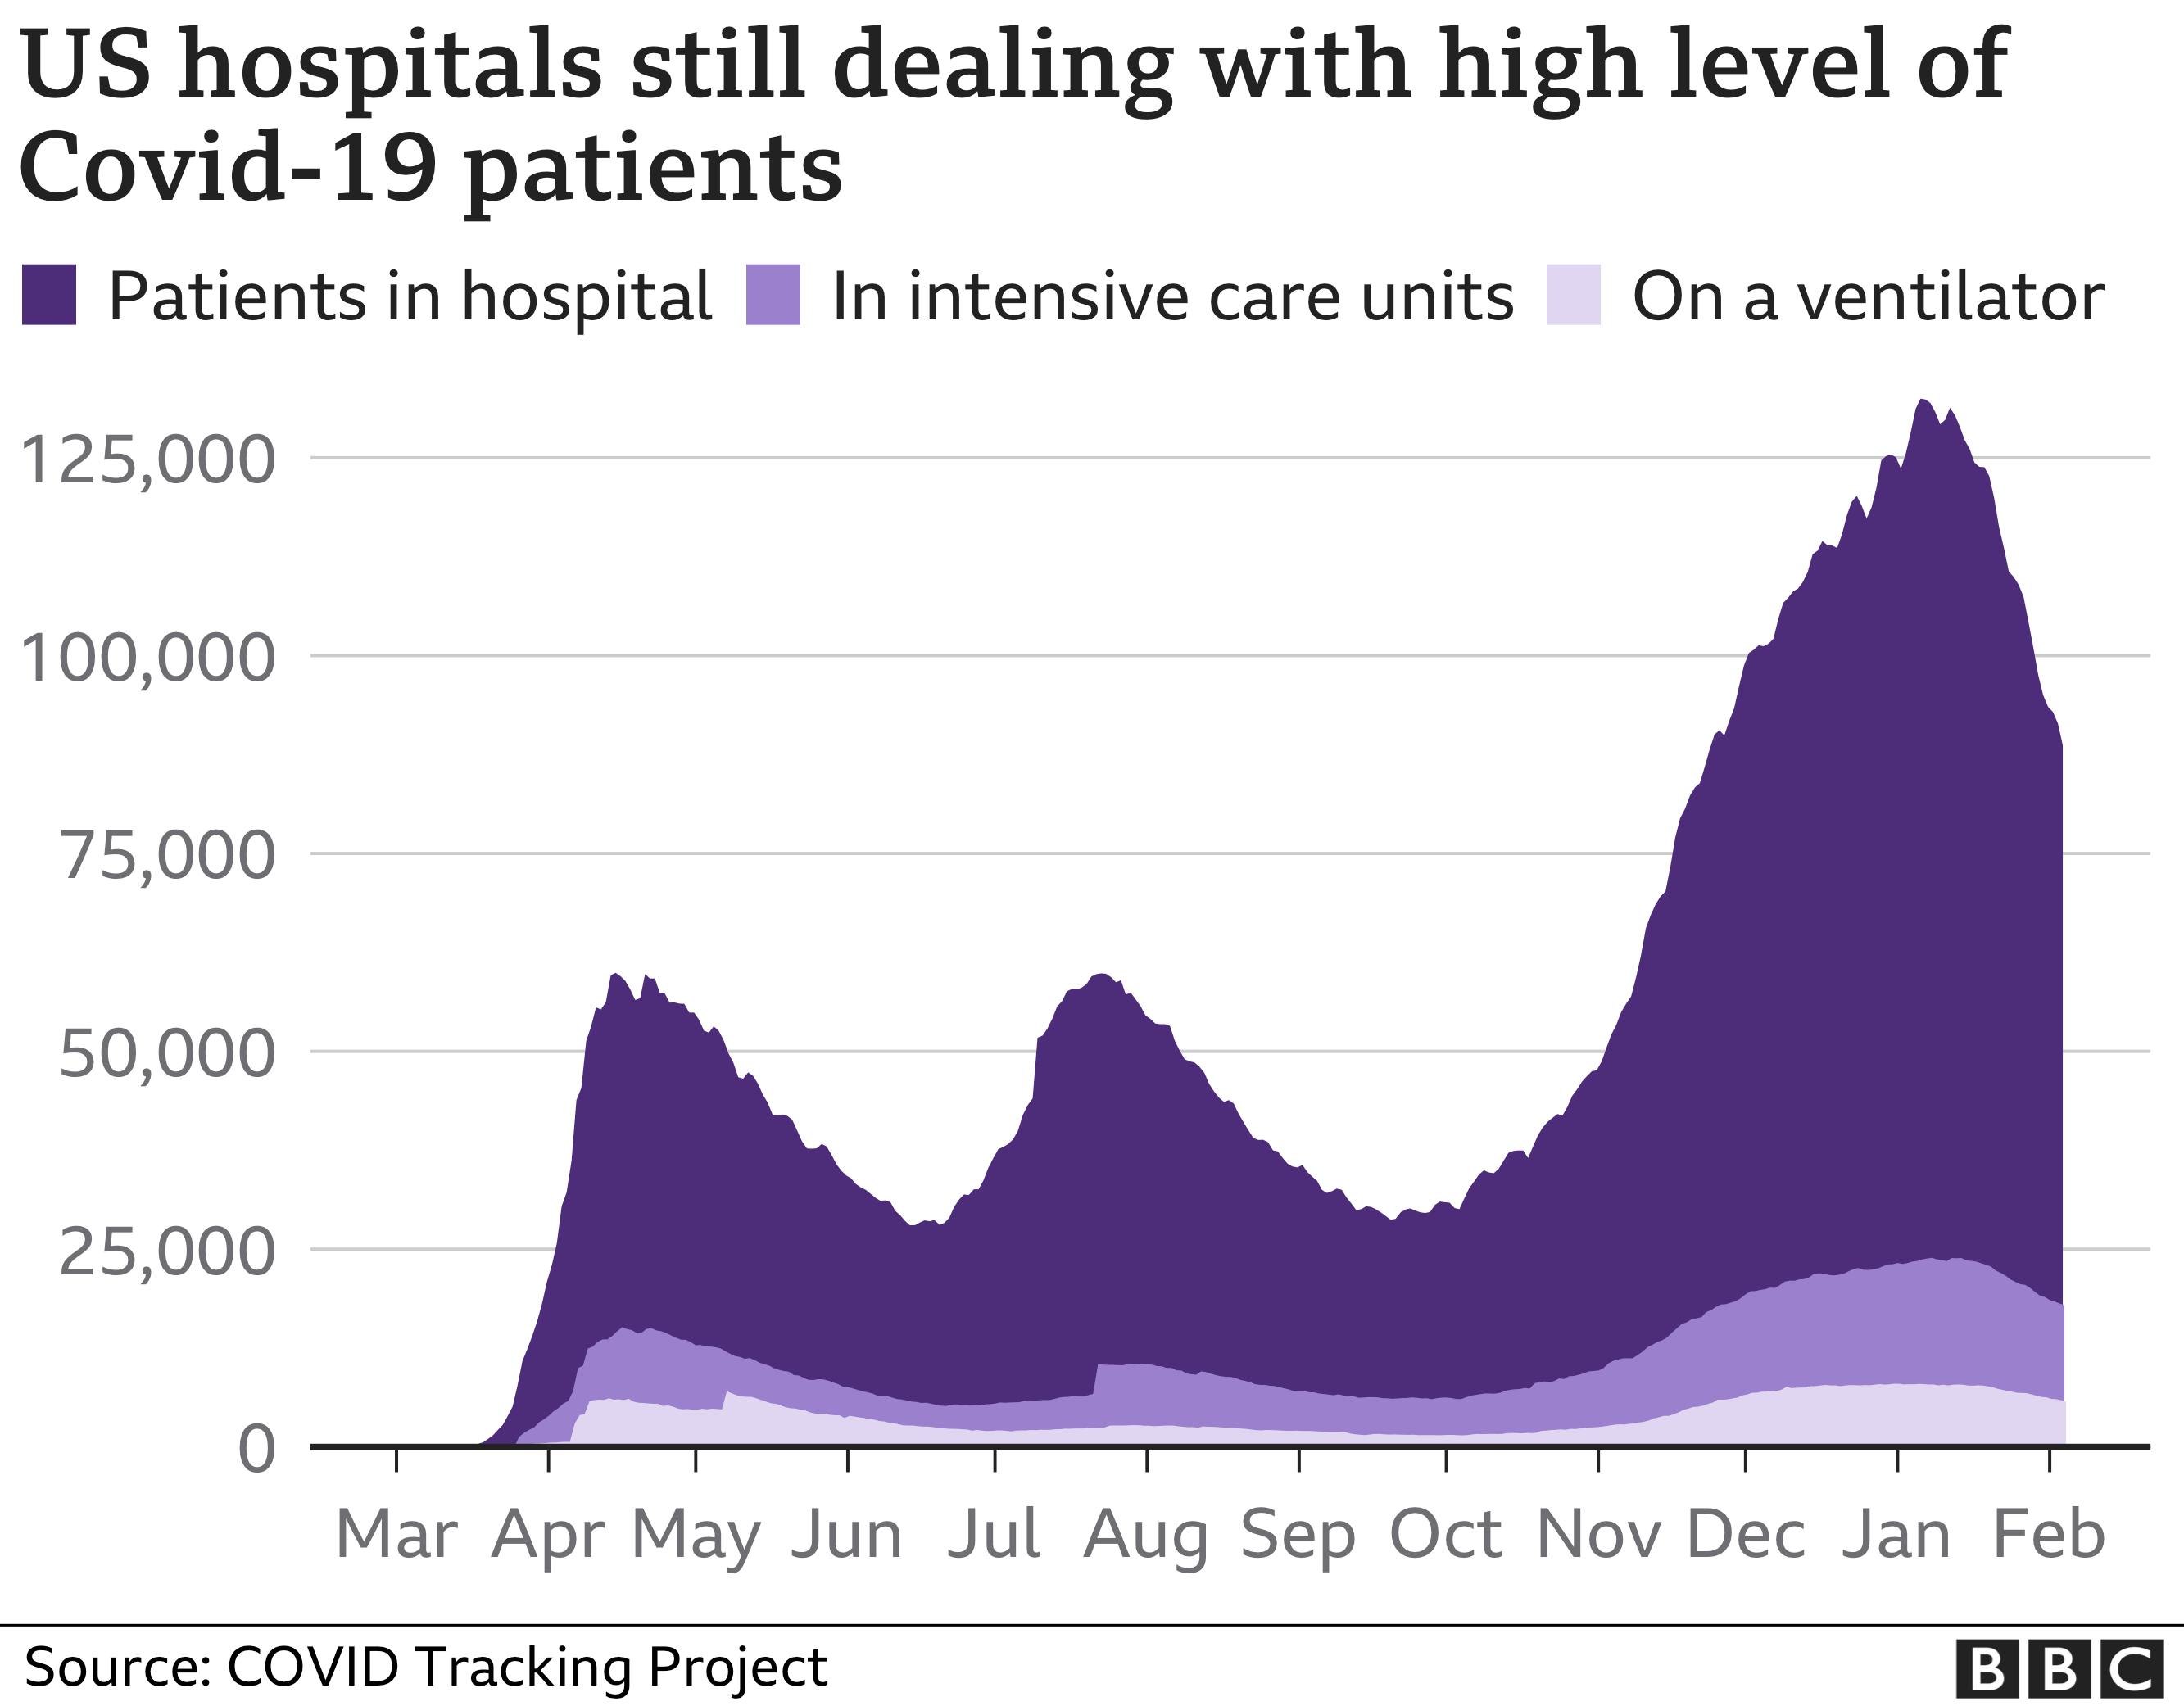 График, показывающий количество пациентов с Covid-19 в больницах США, остается очень высоким